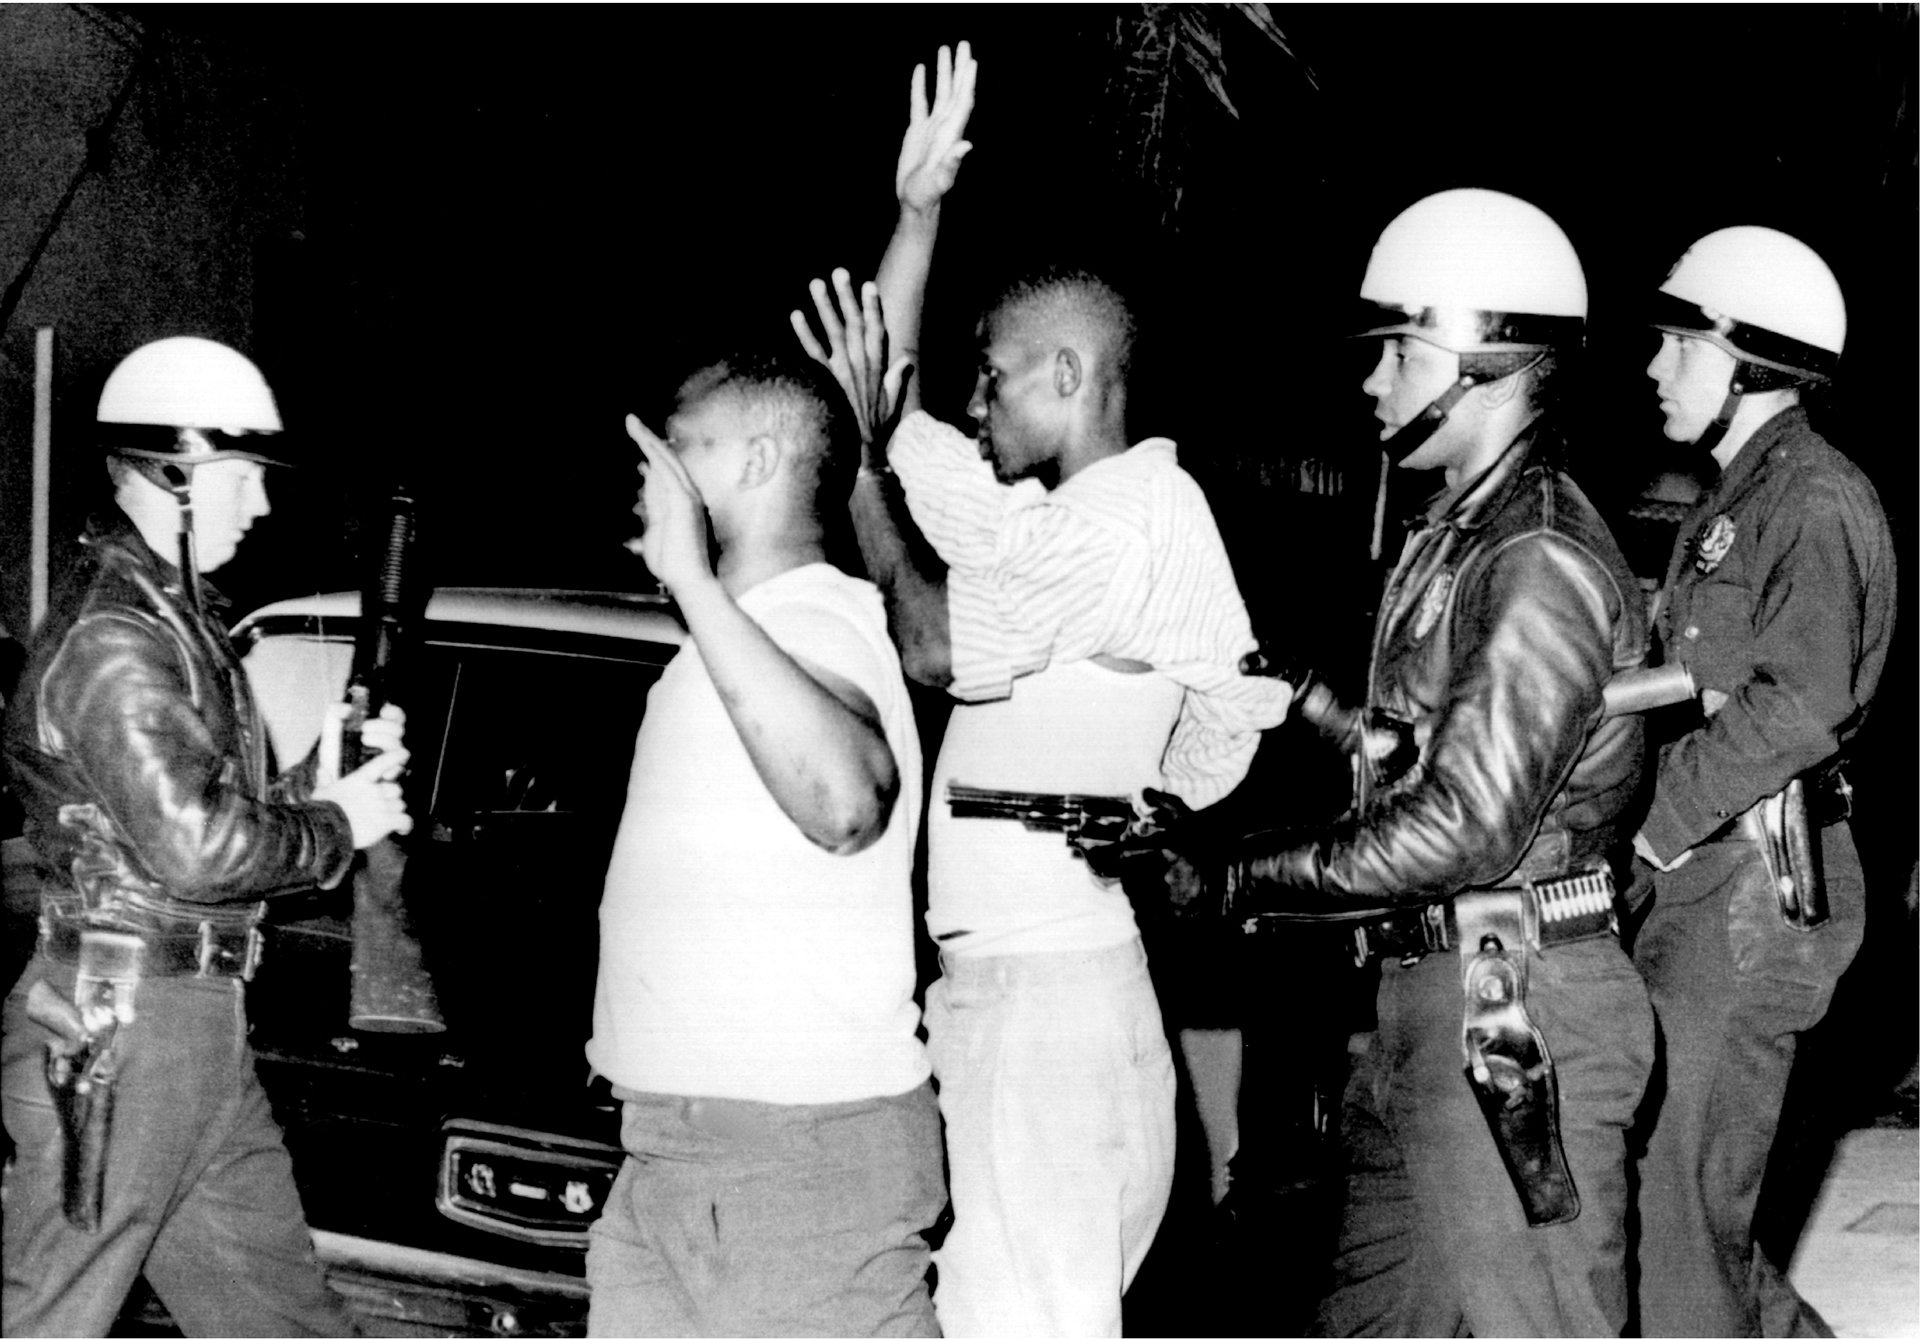 Polizeigewalt ist kein neues Thema. Diese Aufnahme stammt aus dem Jahr 1965 und entstand bei Unruhen in Los Angeles